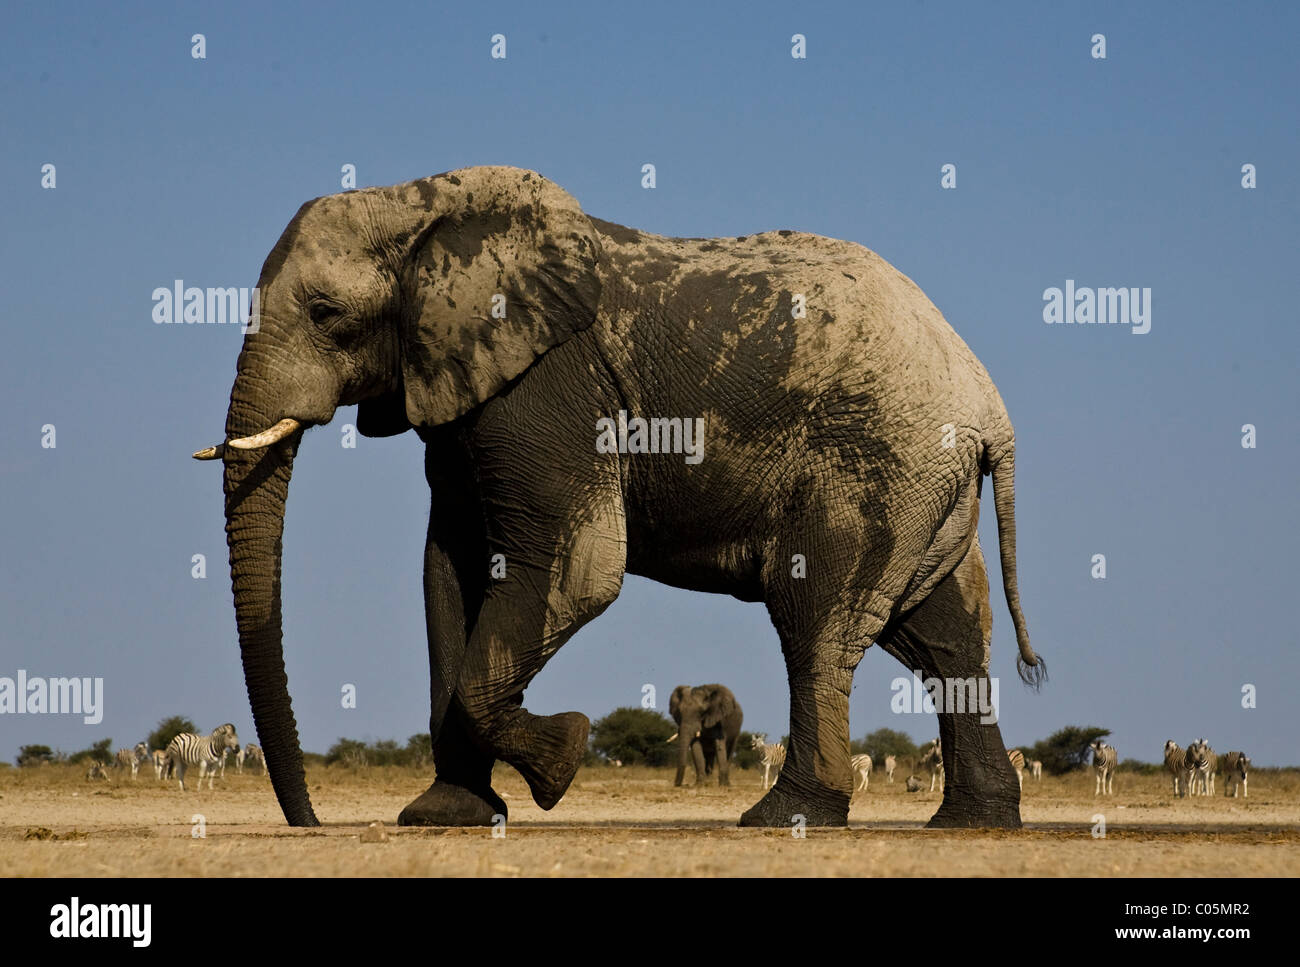 Elephant at Waterhole, Etosha National Park, Namibia Stock Photo